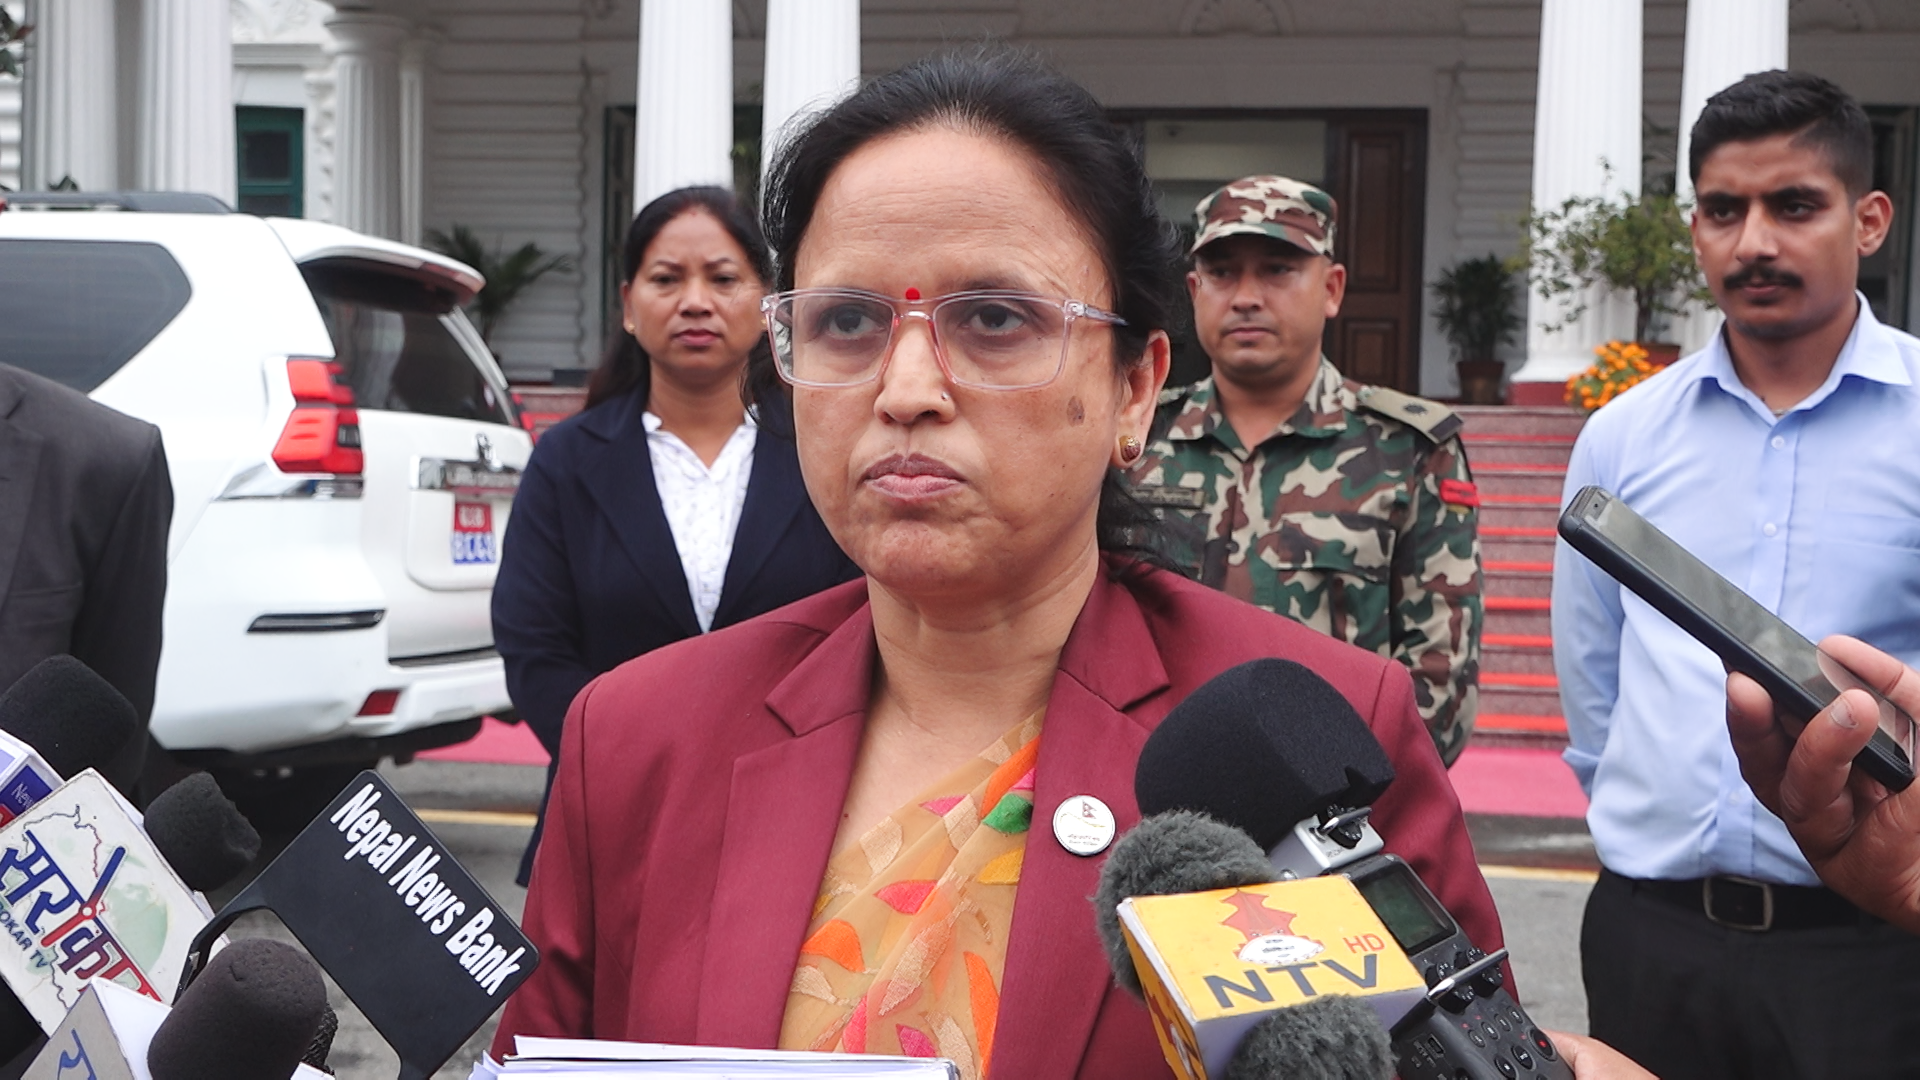 बजेटको तयारीका लागि संवैधानिक व्यवस्था अनुसार संसद अन्त्य गरियाेः मन्त्री शर्मा